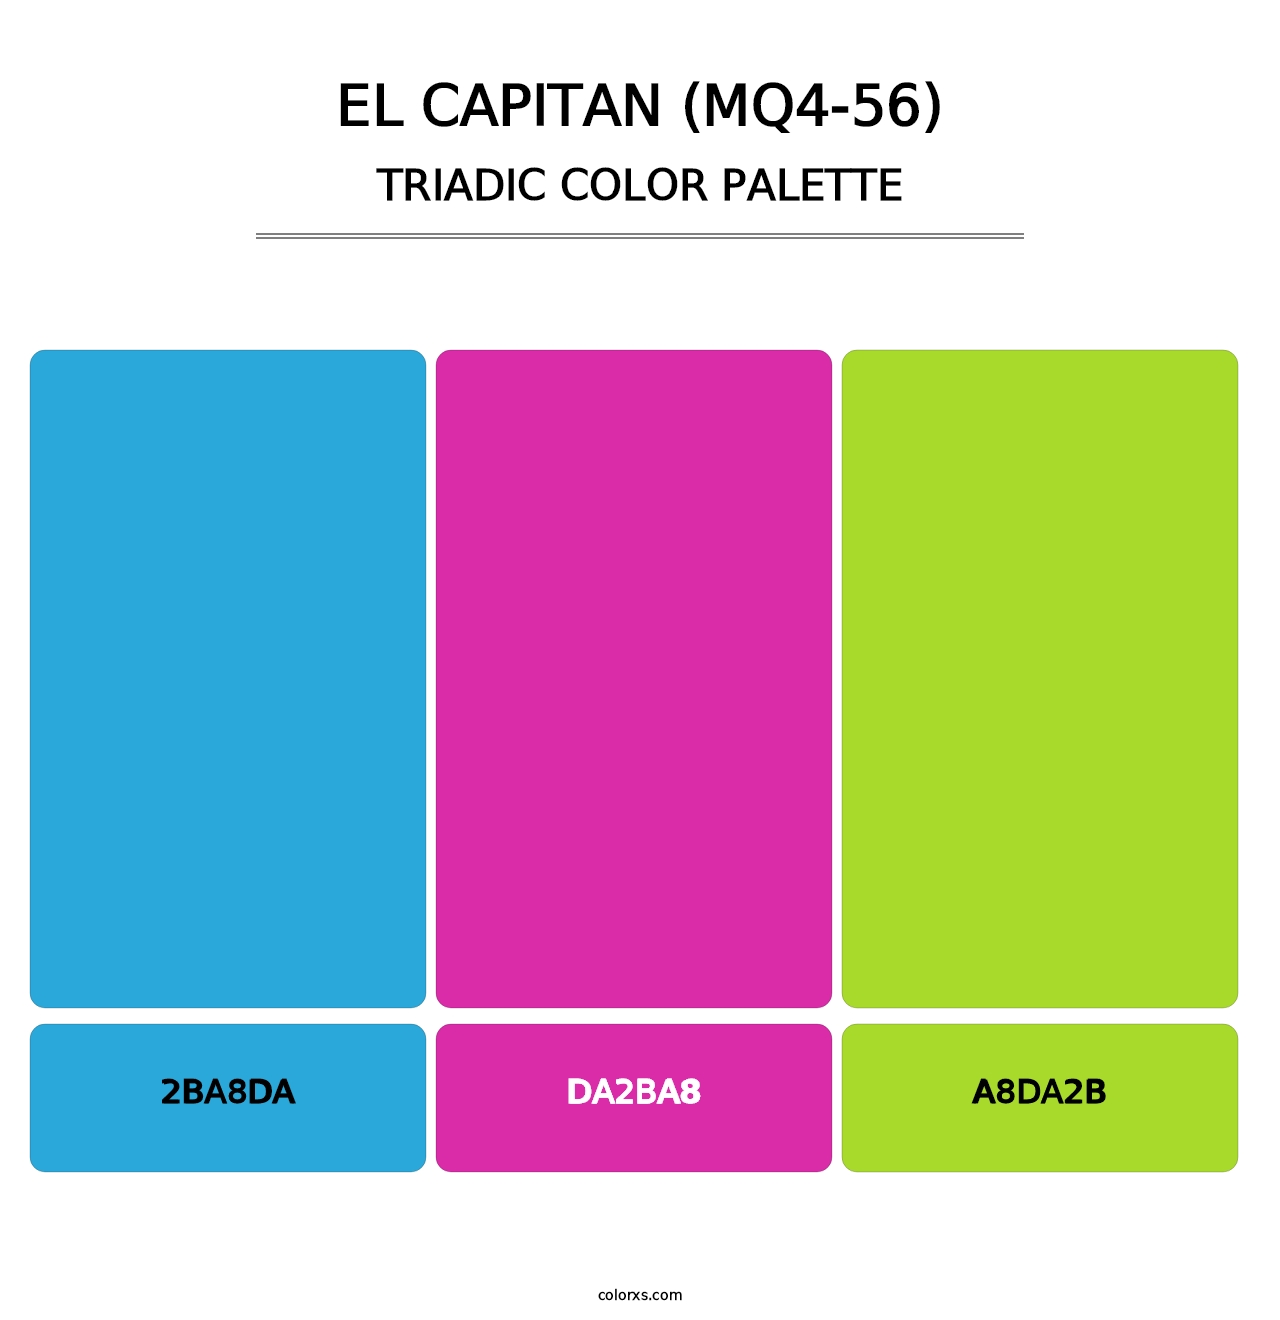 El Capitan (MQ4-56) - Triadic Color Palette